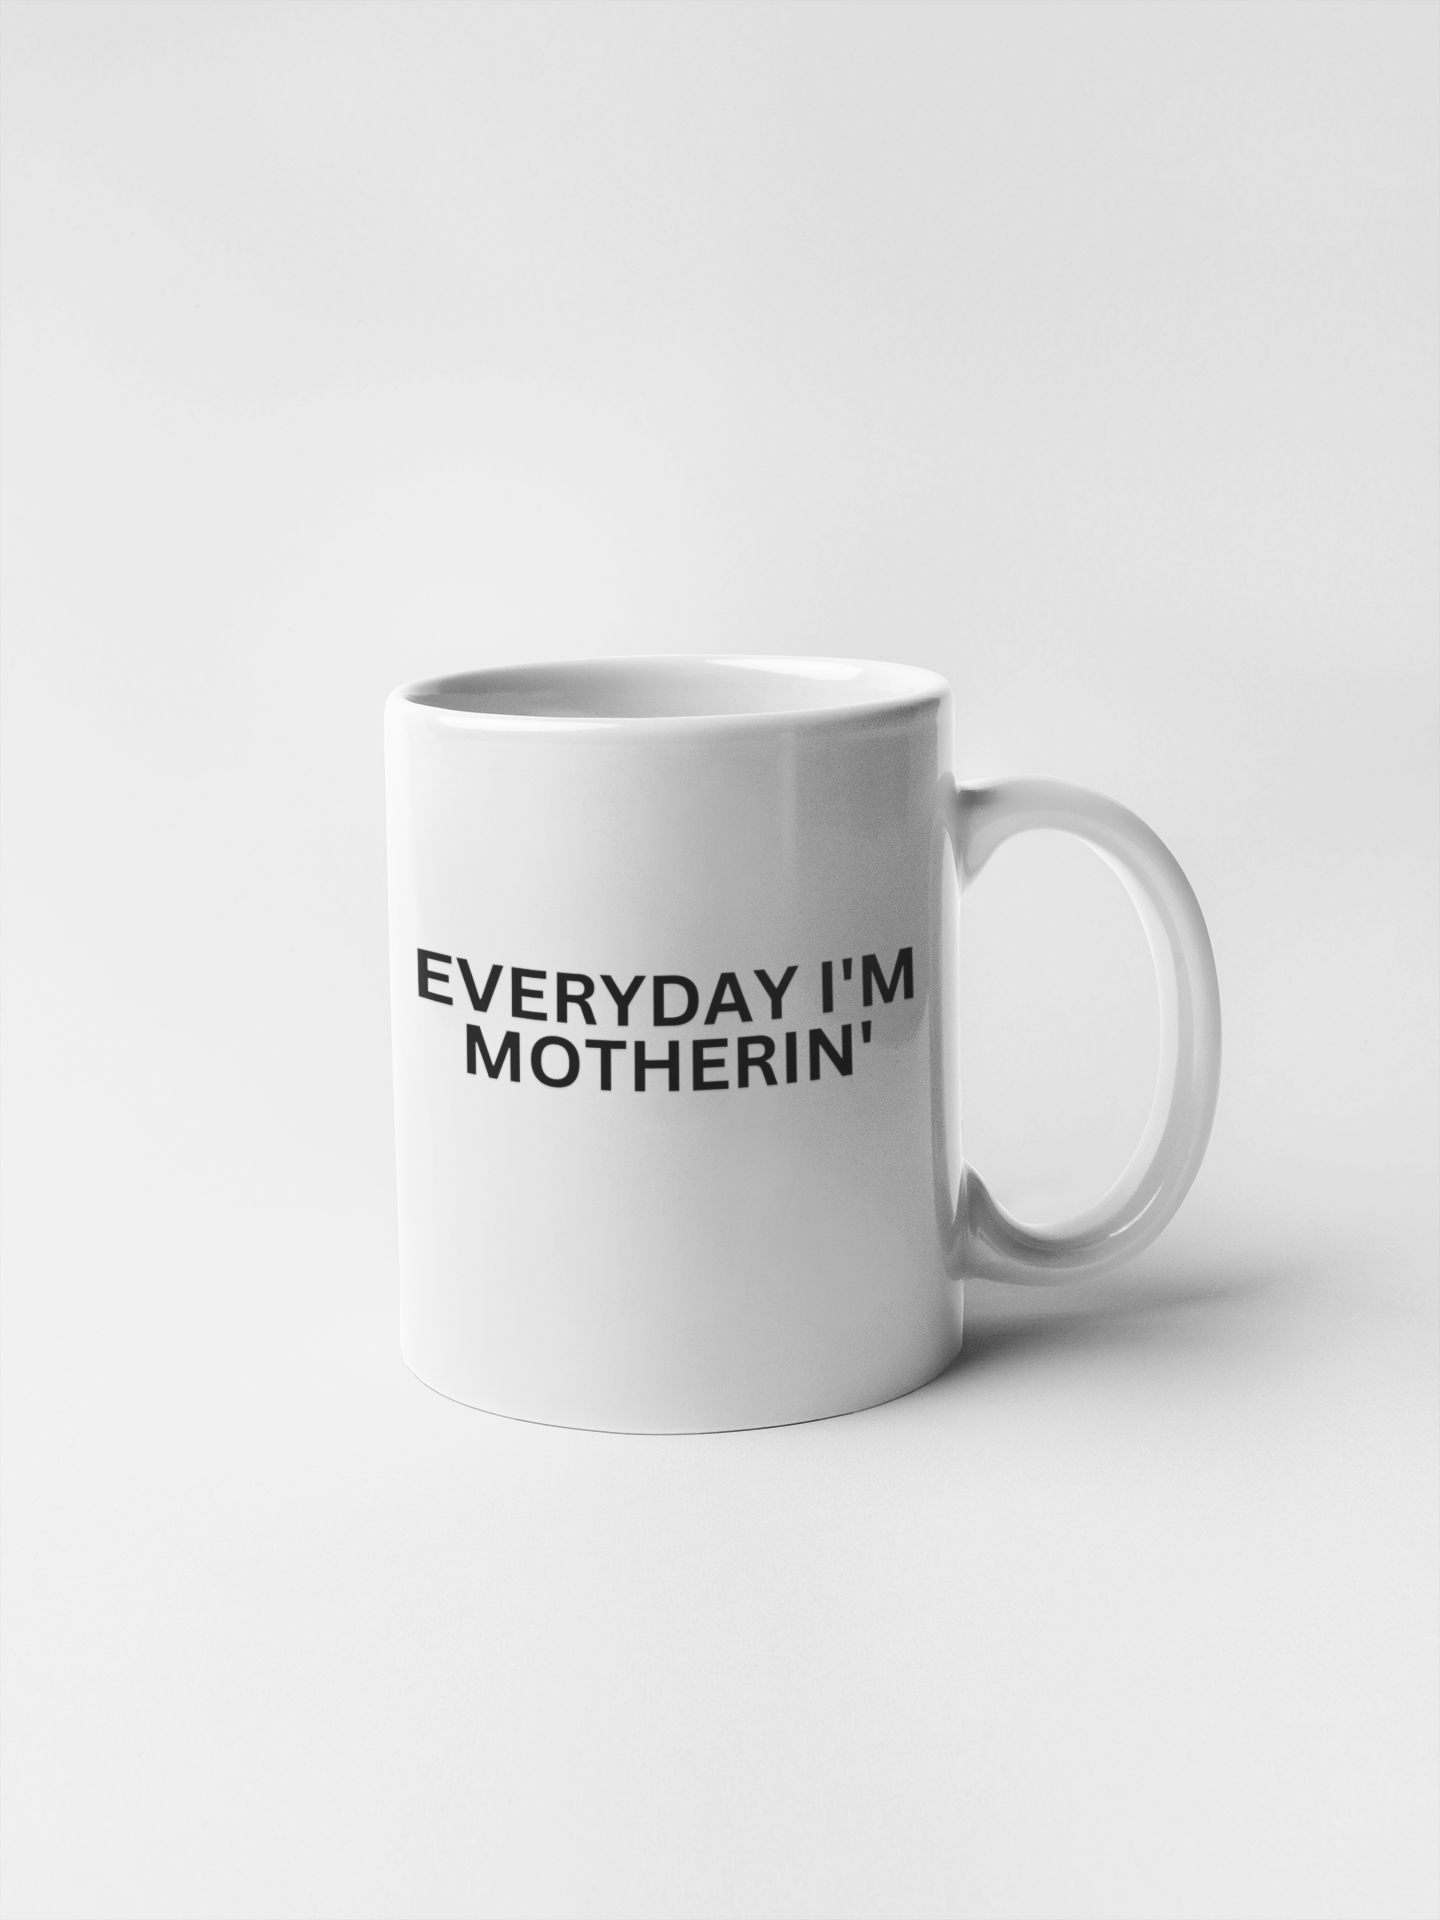 Cool Mom Mug Gift For Mothers Day Unique Gift For Everyday Mug Best mom ever mug, Mug For Mom, Mom Ceramic Coffee Mug